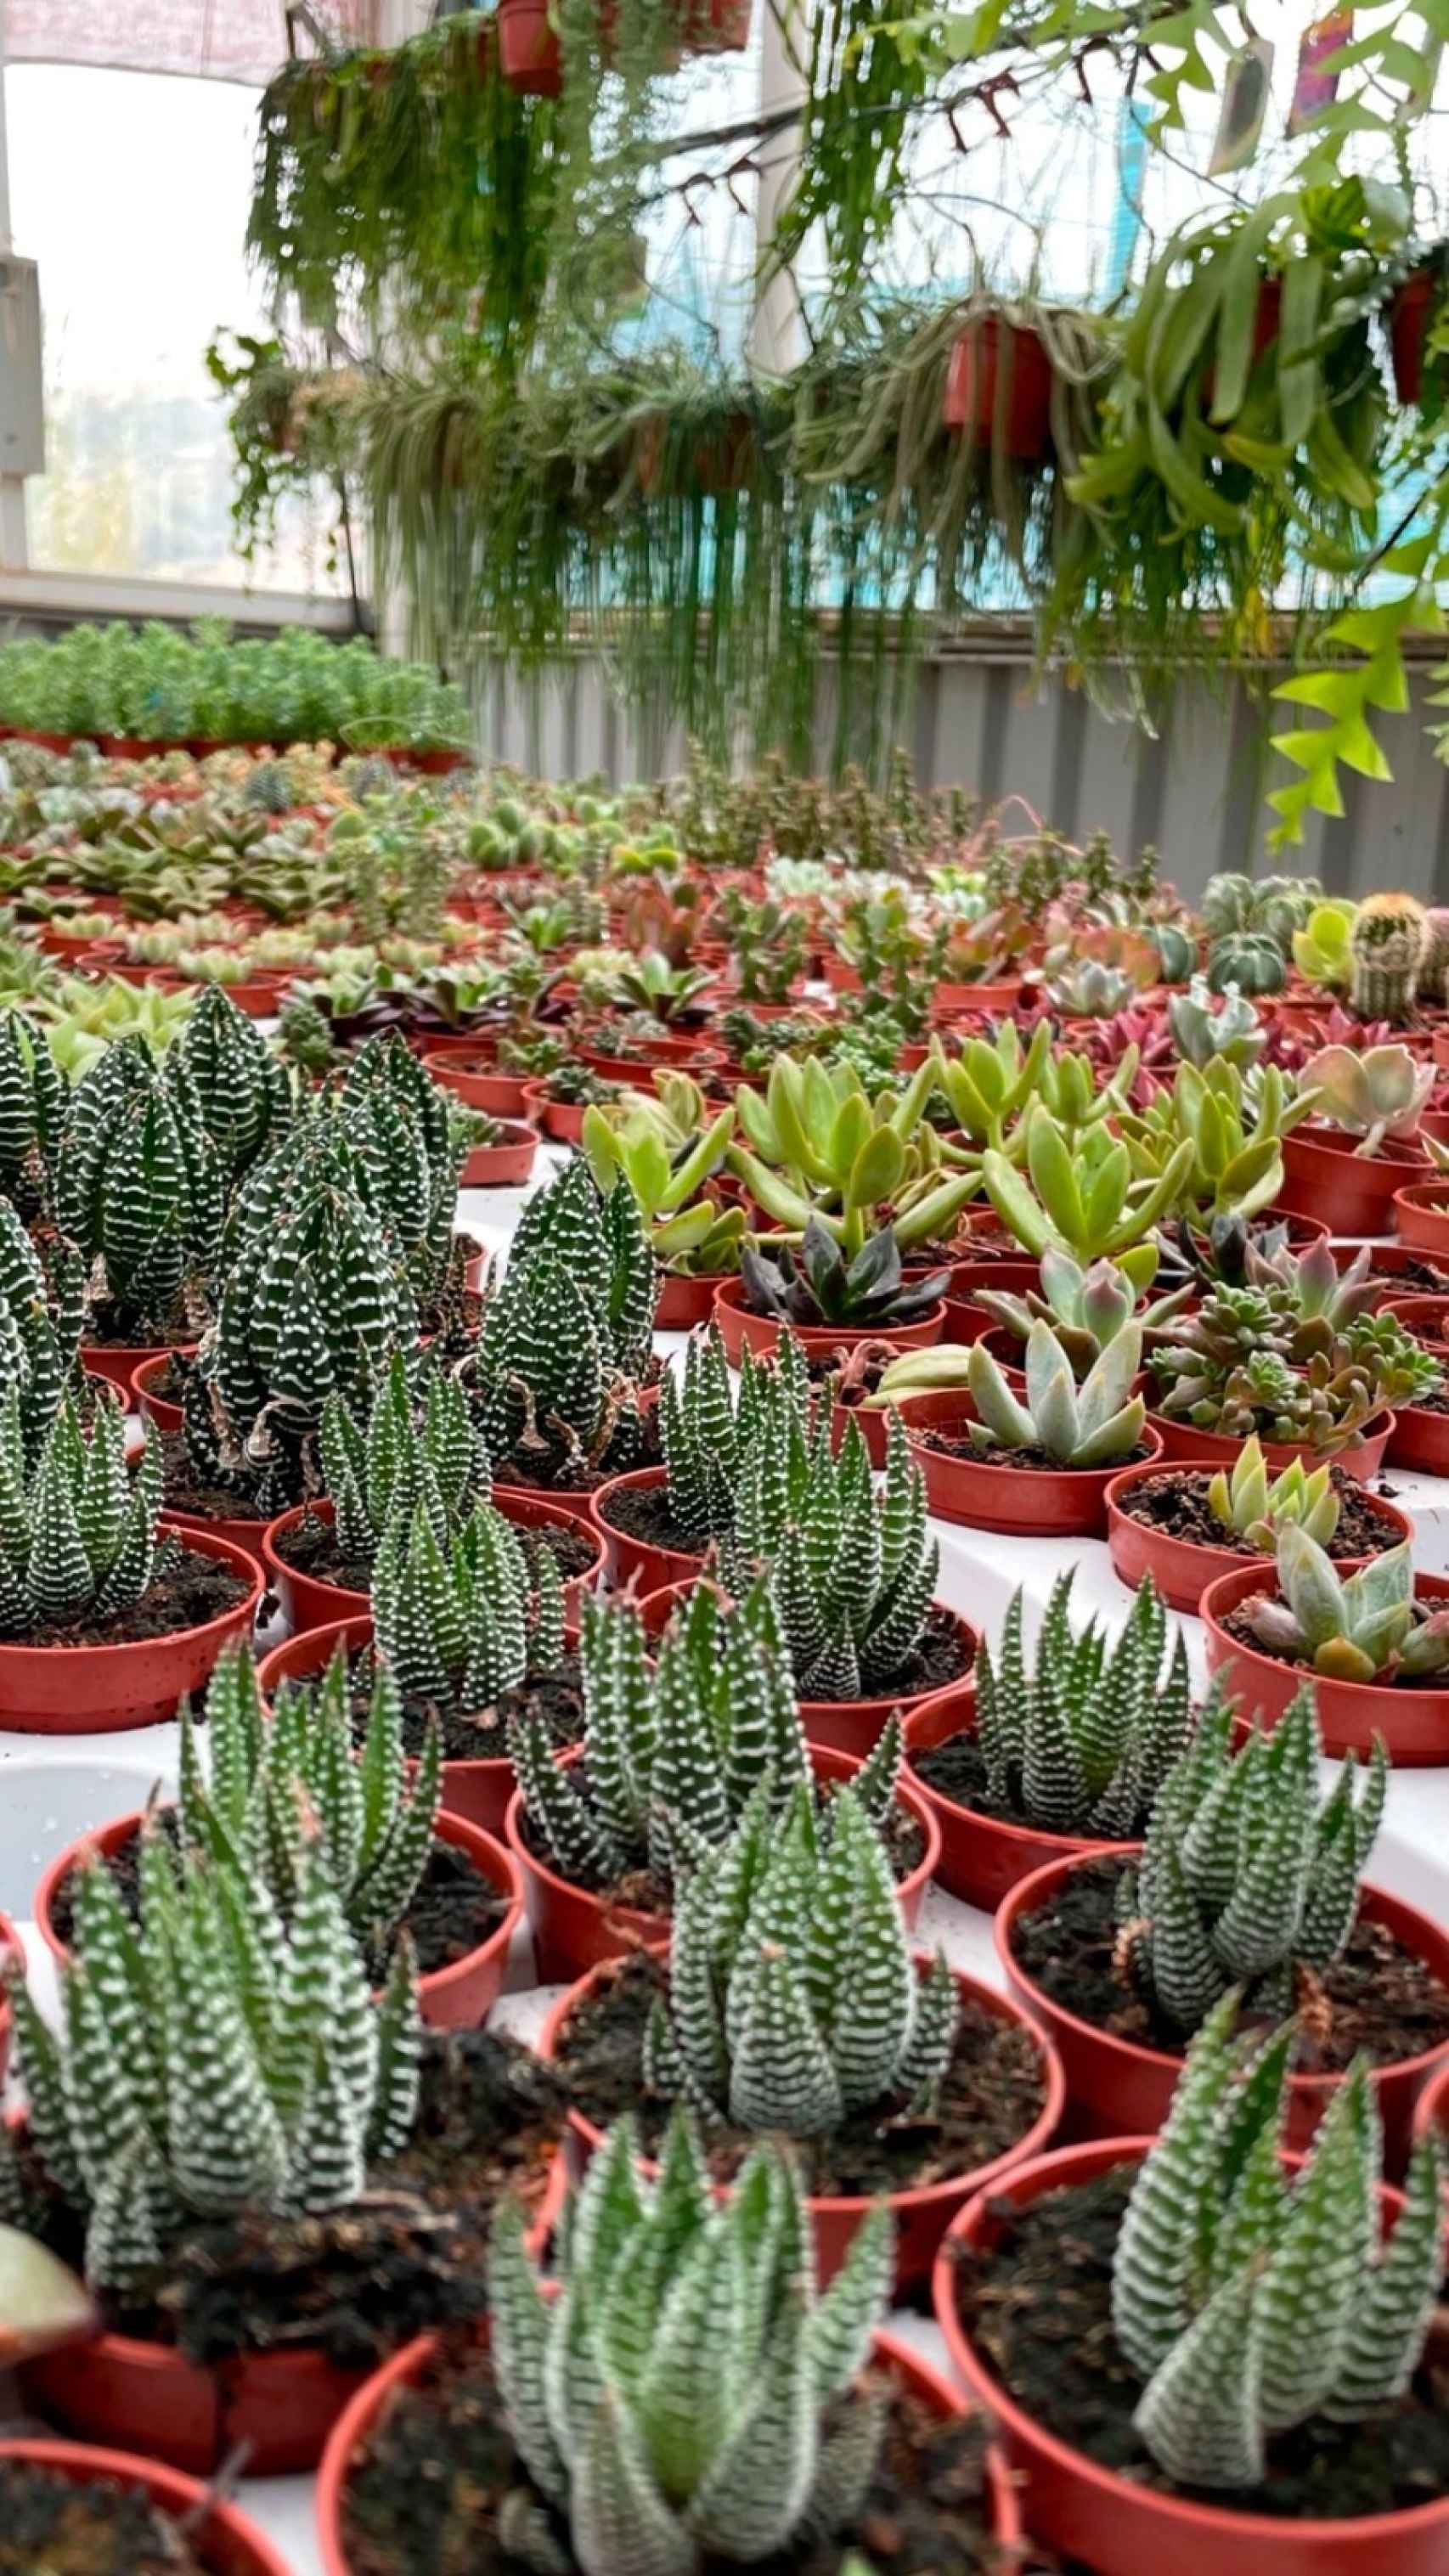 Algunos de los cactus que venden.